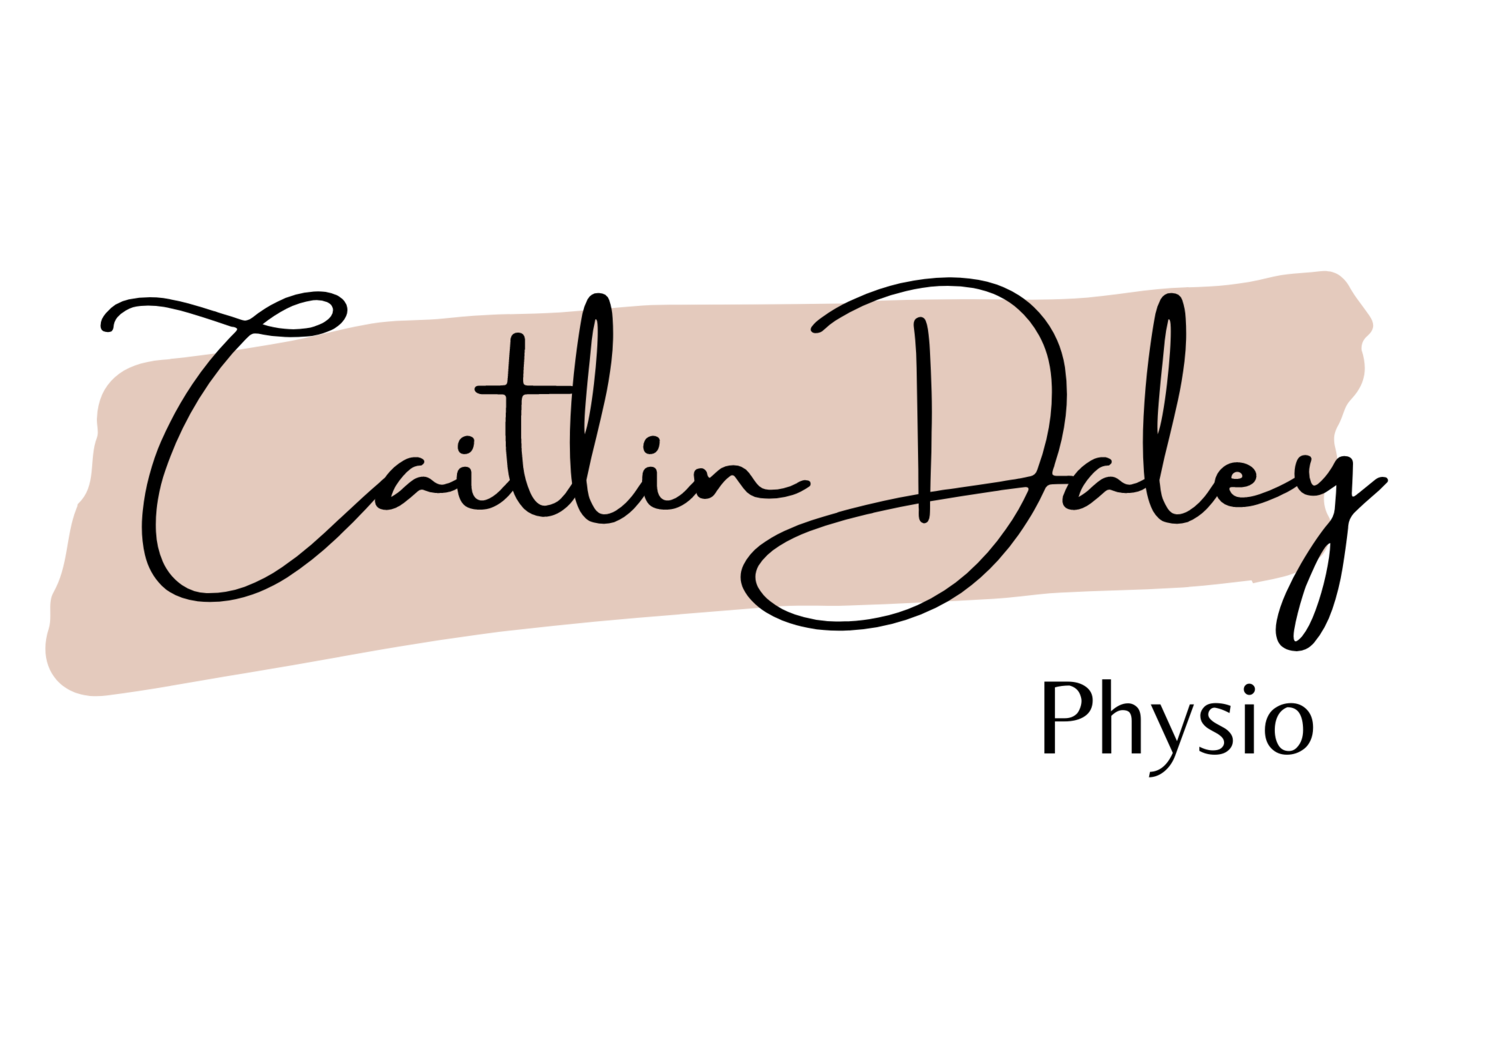 Caitlin Daley Physio